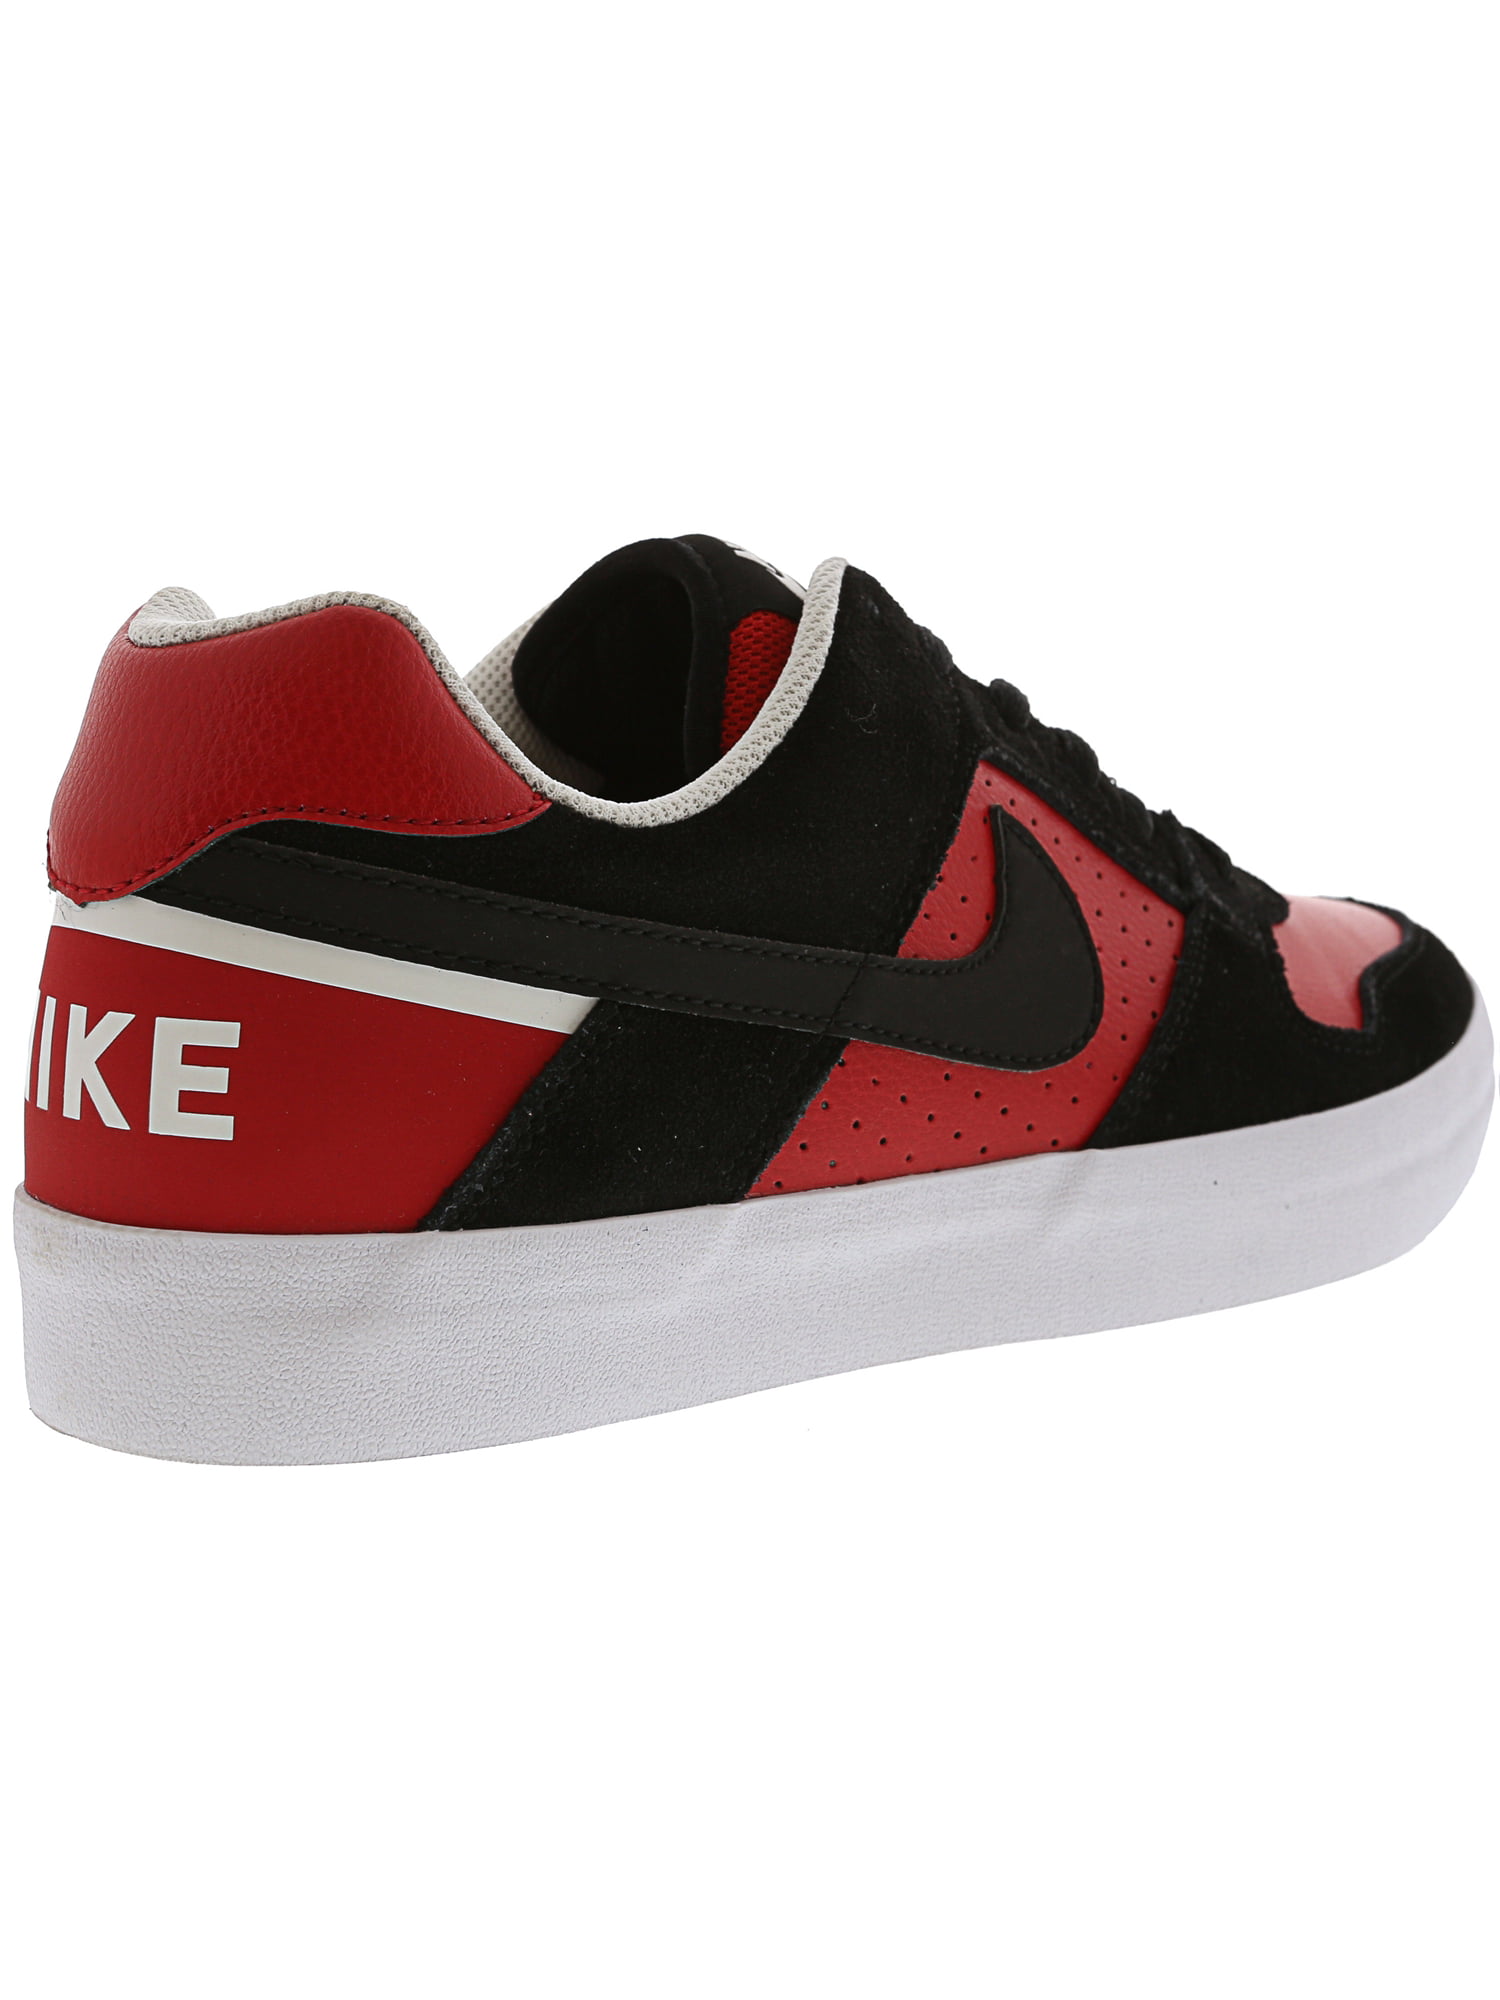 Nike Men's Sb Delta Force Vulc Black / - University Red Ankle-High Leather Skateboarding 10M -